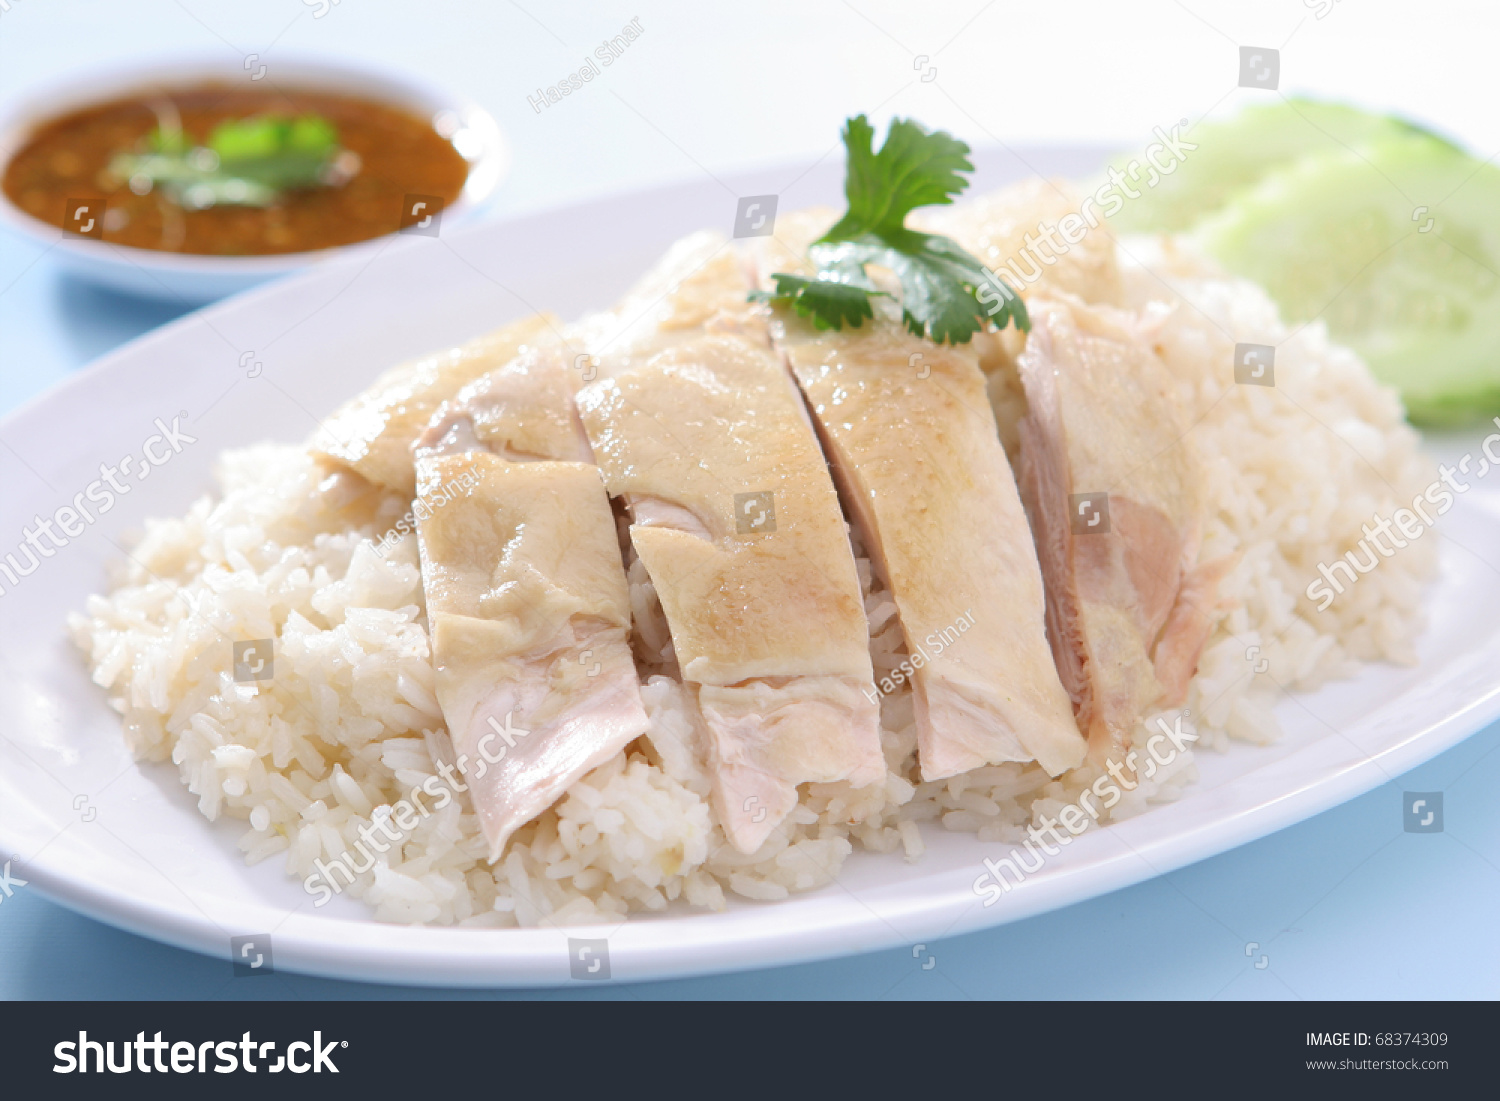 chicken rice clipart - photo #25